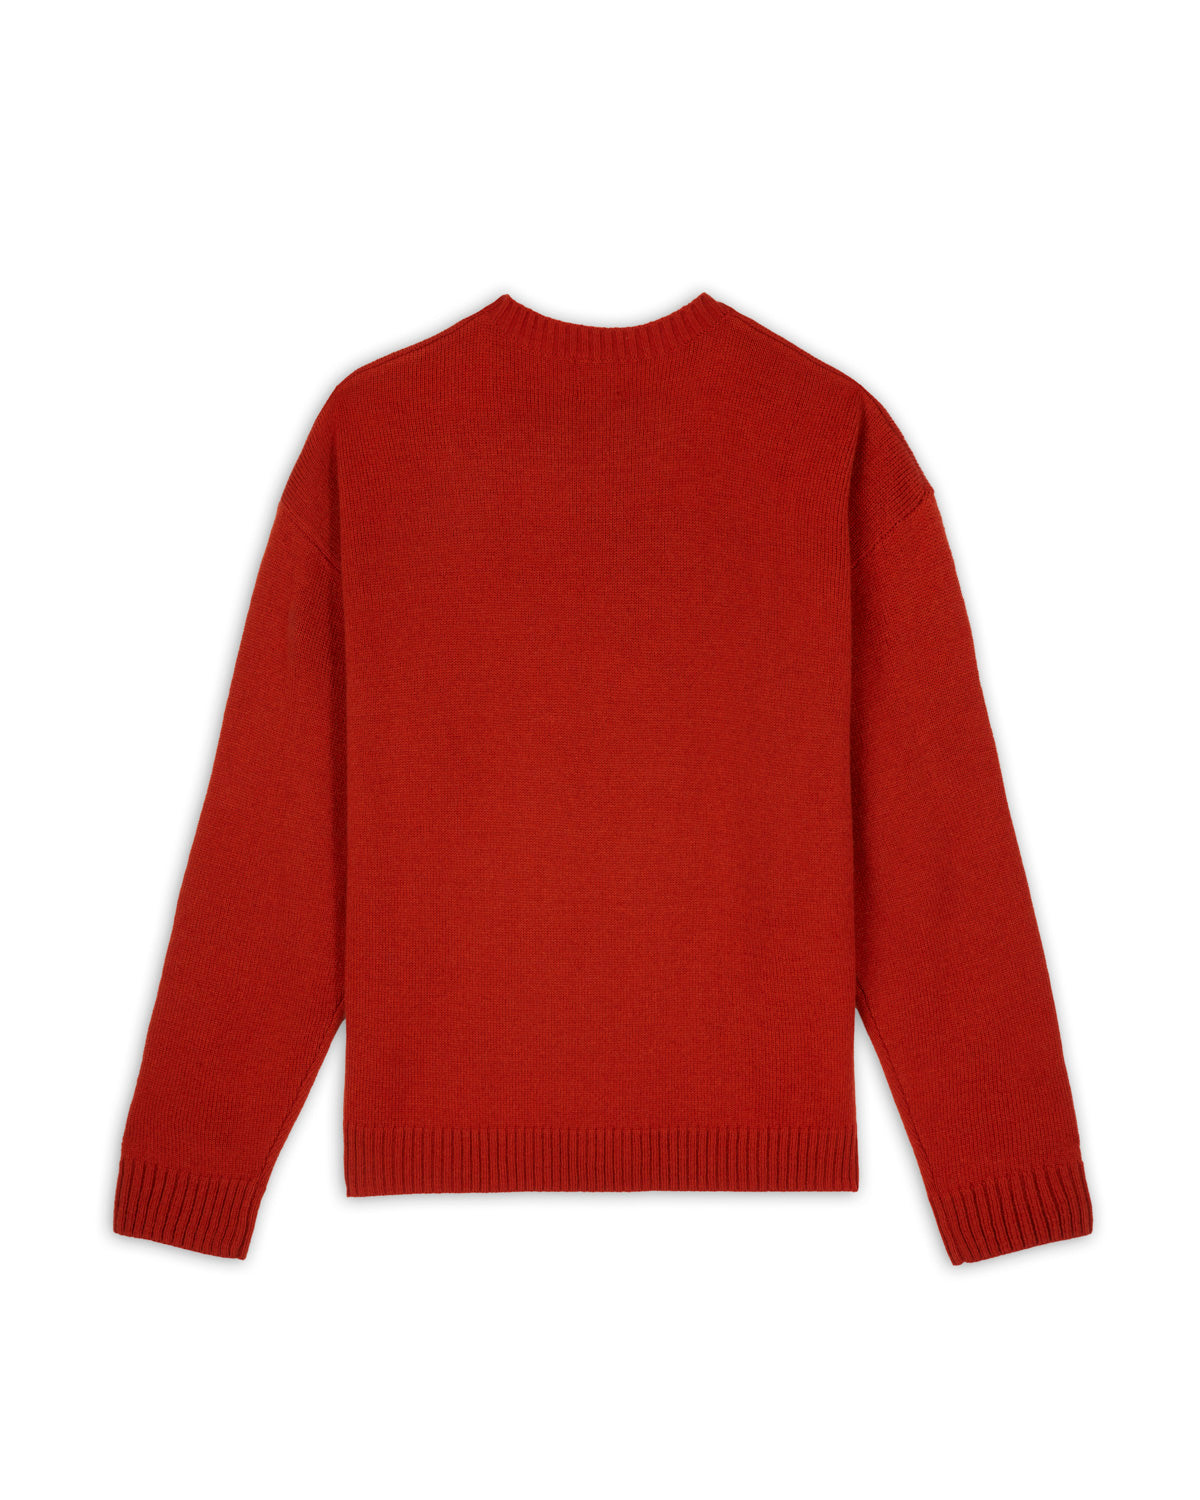 Gnome Sweater, Terracotta